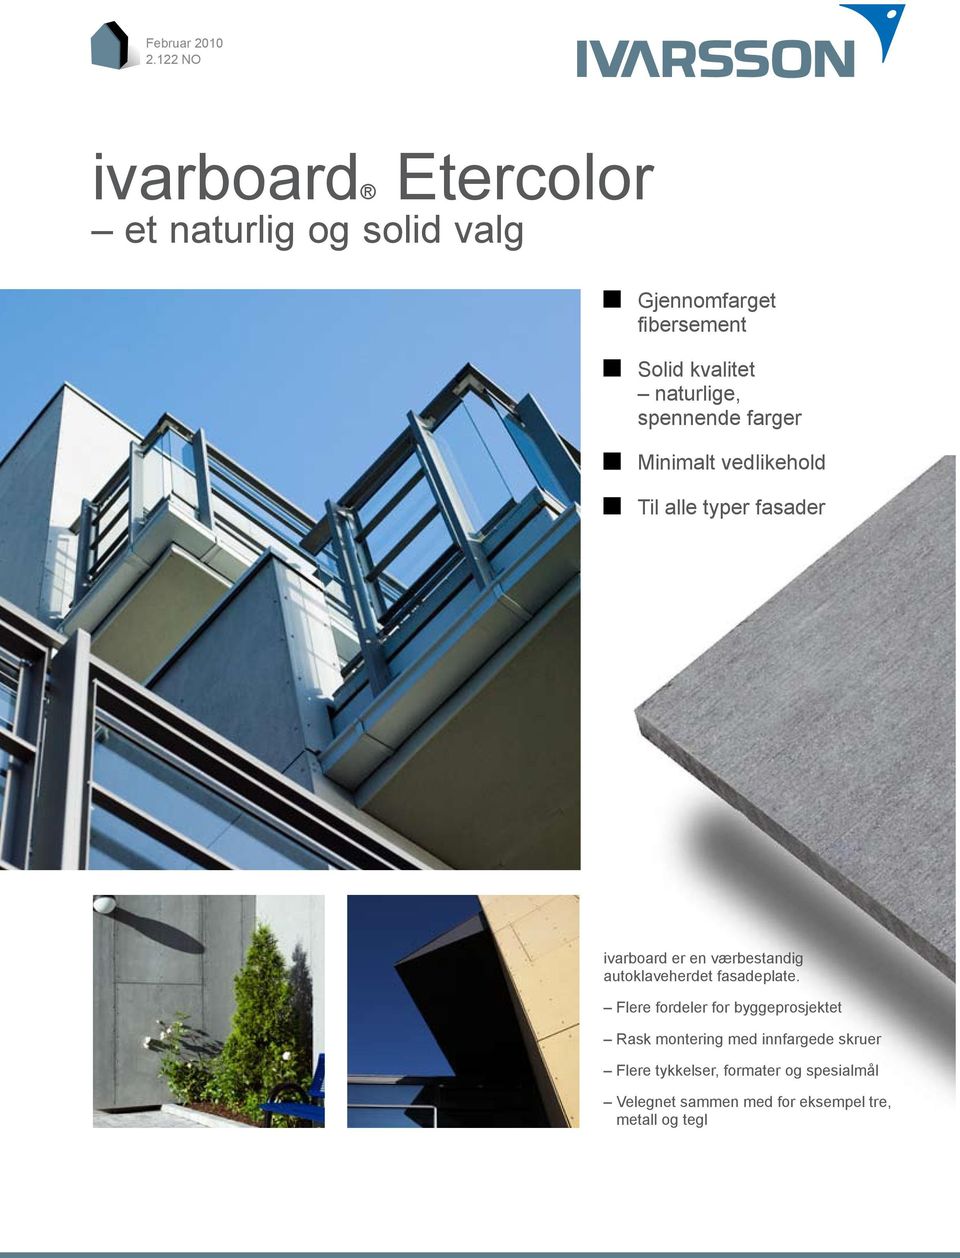 naturlige, spennende farger Minimalt vedlikehold Til alle typer fasader ivarboard er en værbestandig